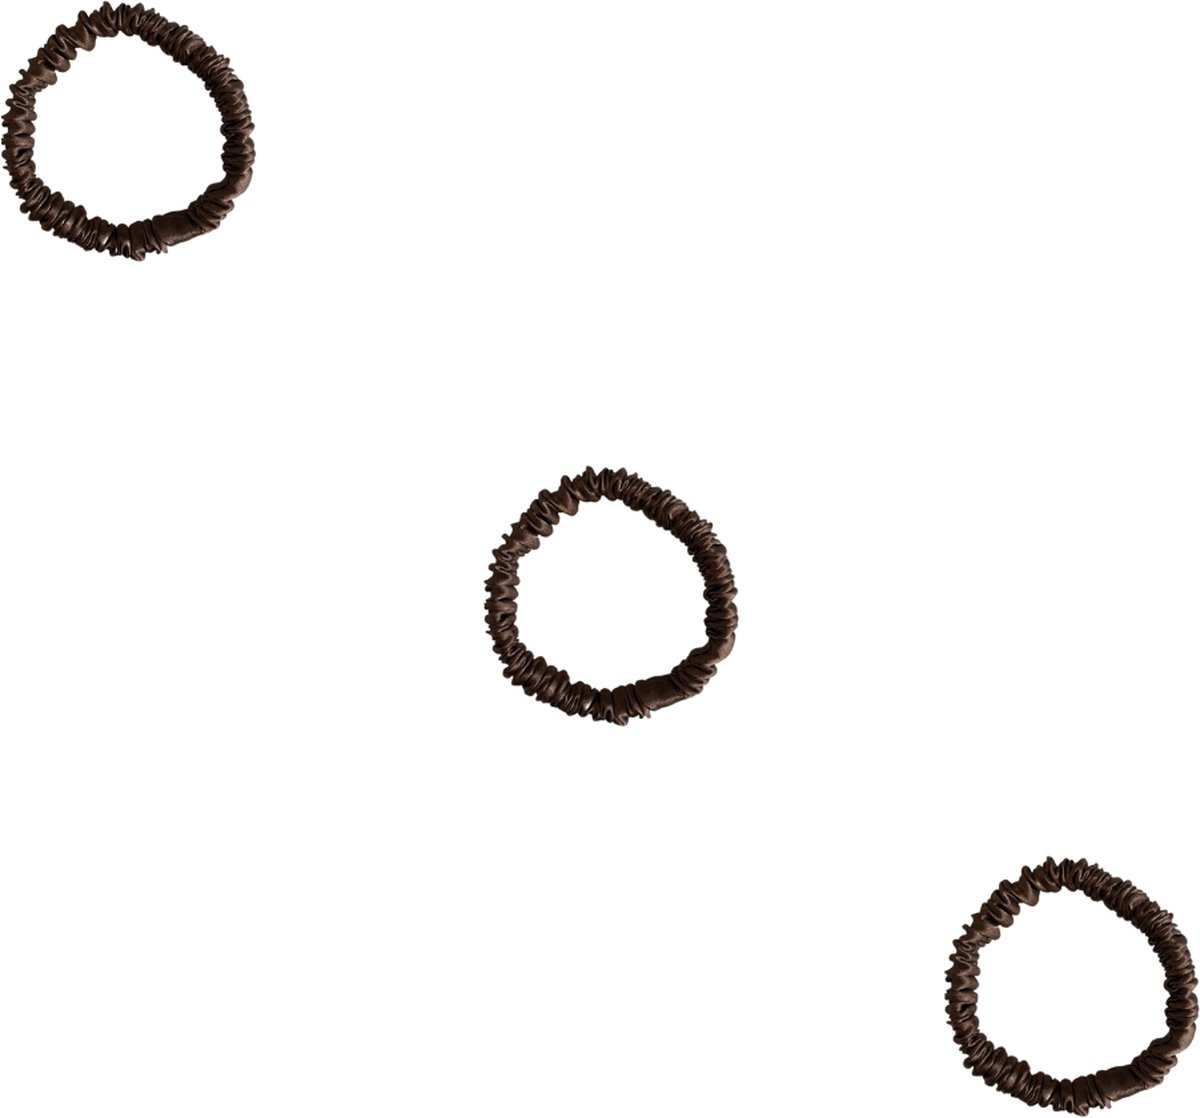 YOSMO - Zijden haar elastiek - Scrunchies - Kleur bruin - 100% moerbei zijde - 3 stuks